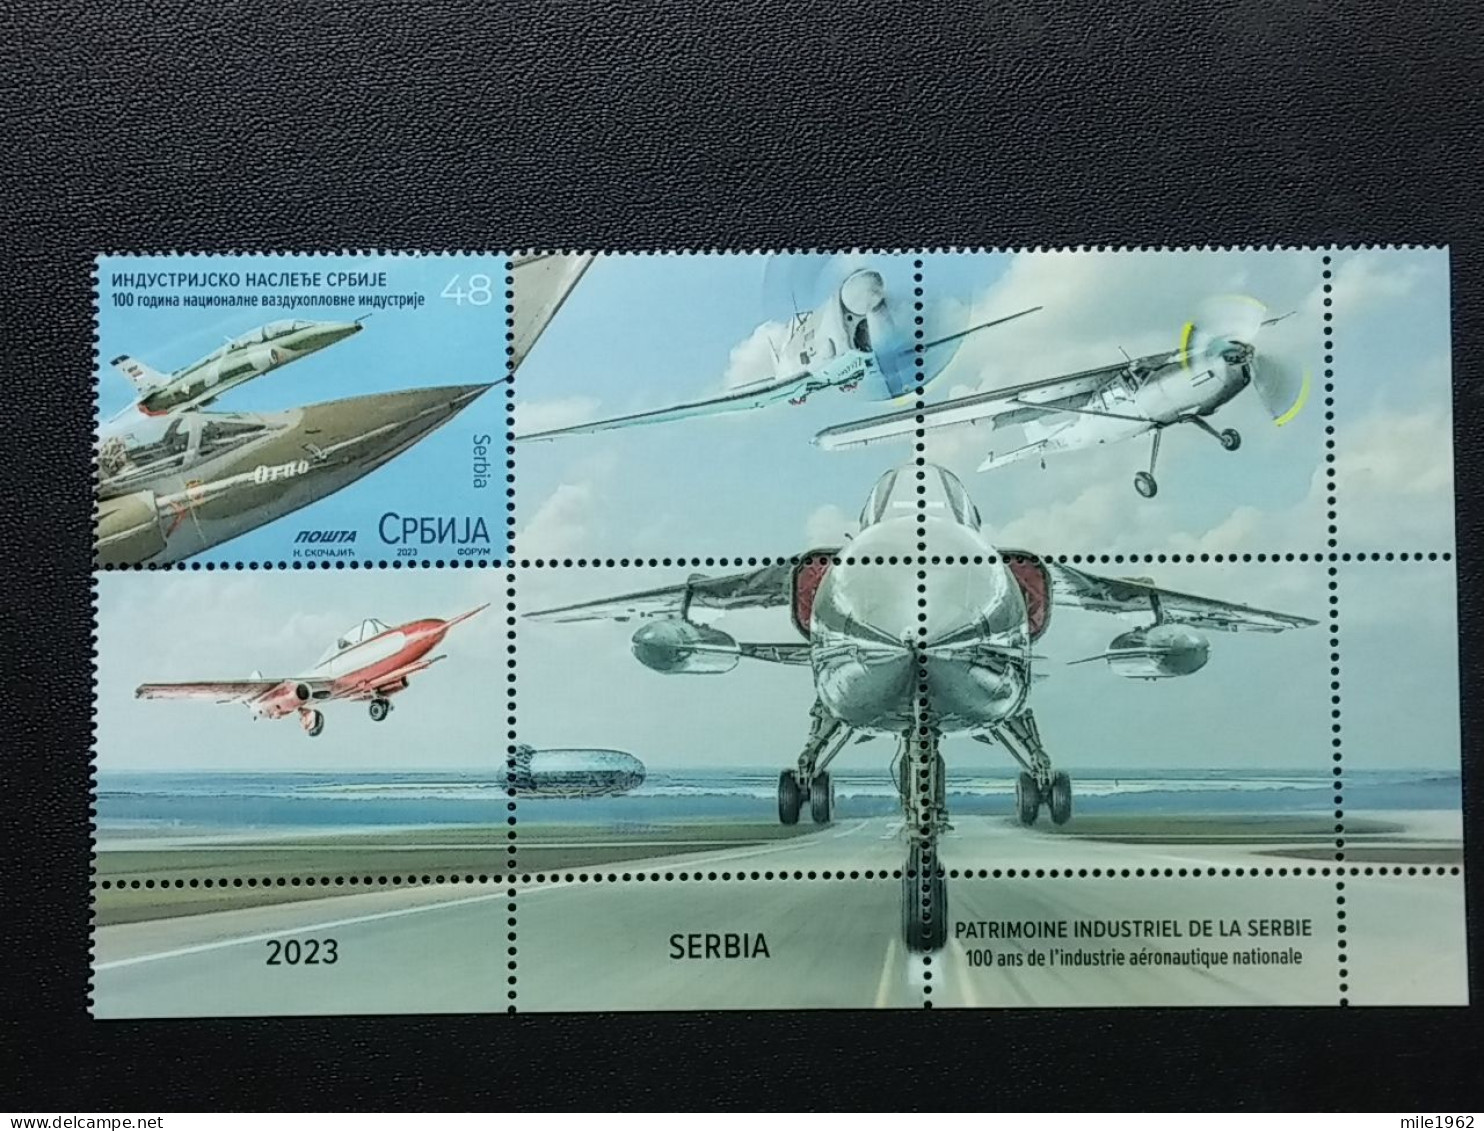 Stamp 3-15 - Serbia 2023 - VIGNETTE + Stamp - Industrial Heritage Of Serbia, Military Industry, Avion, Plane, Avio - Serbie